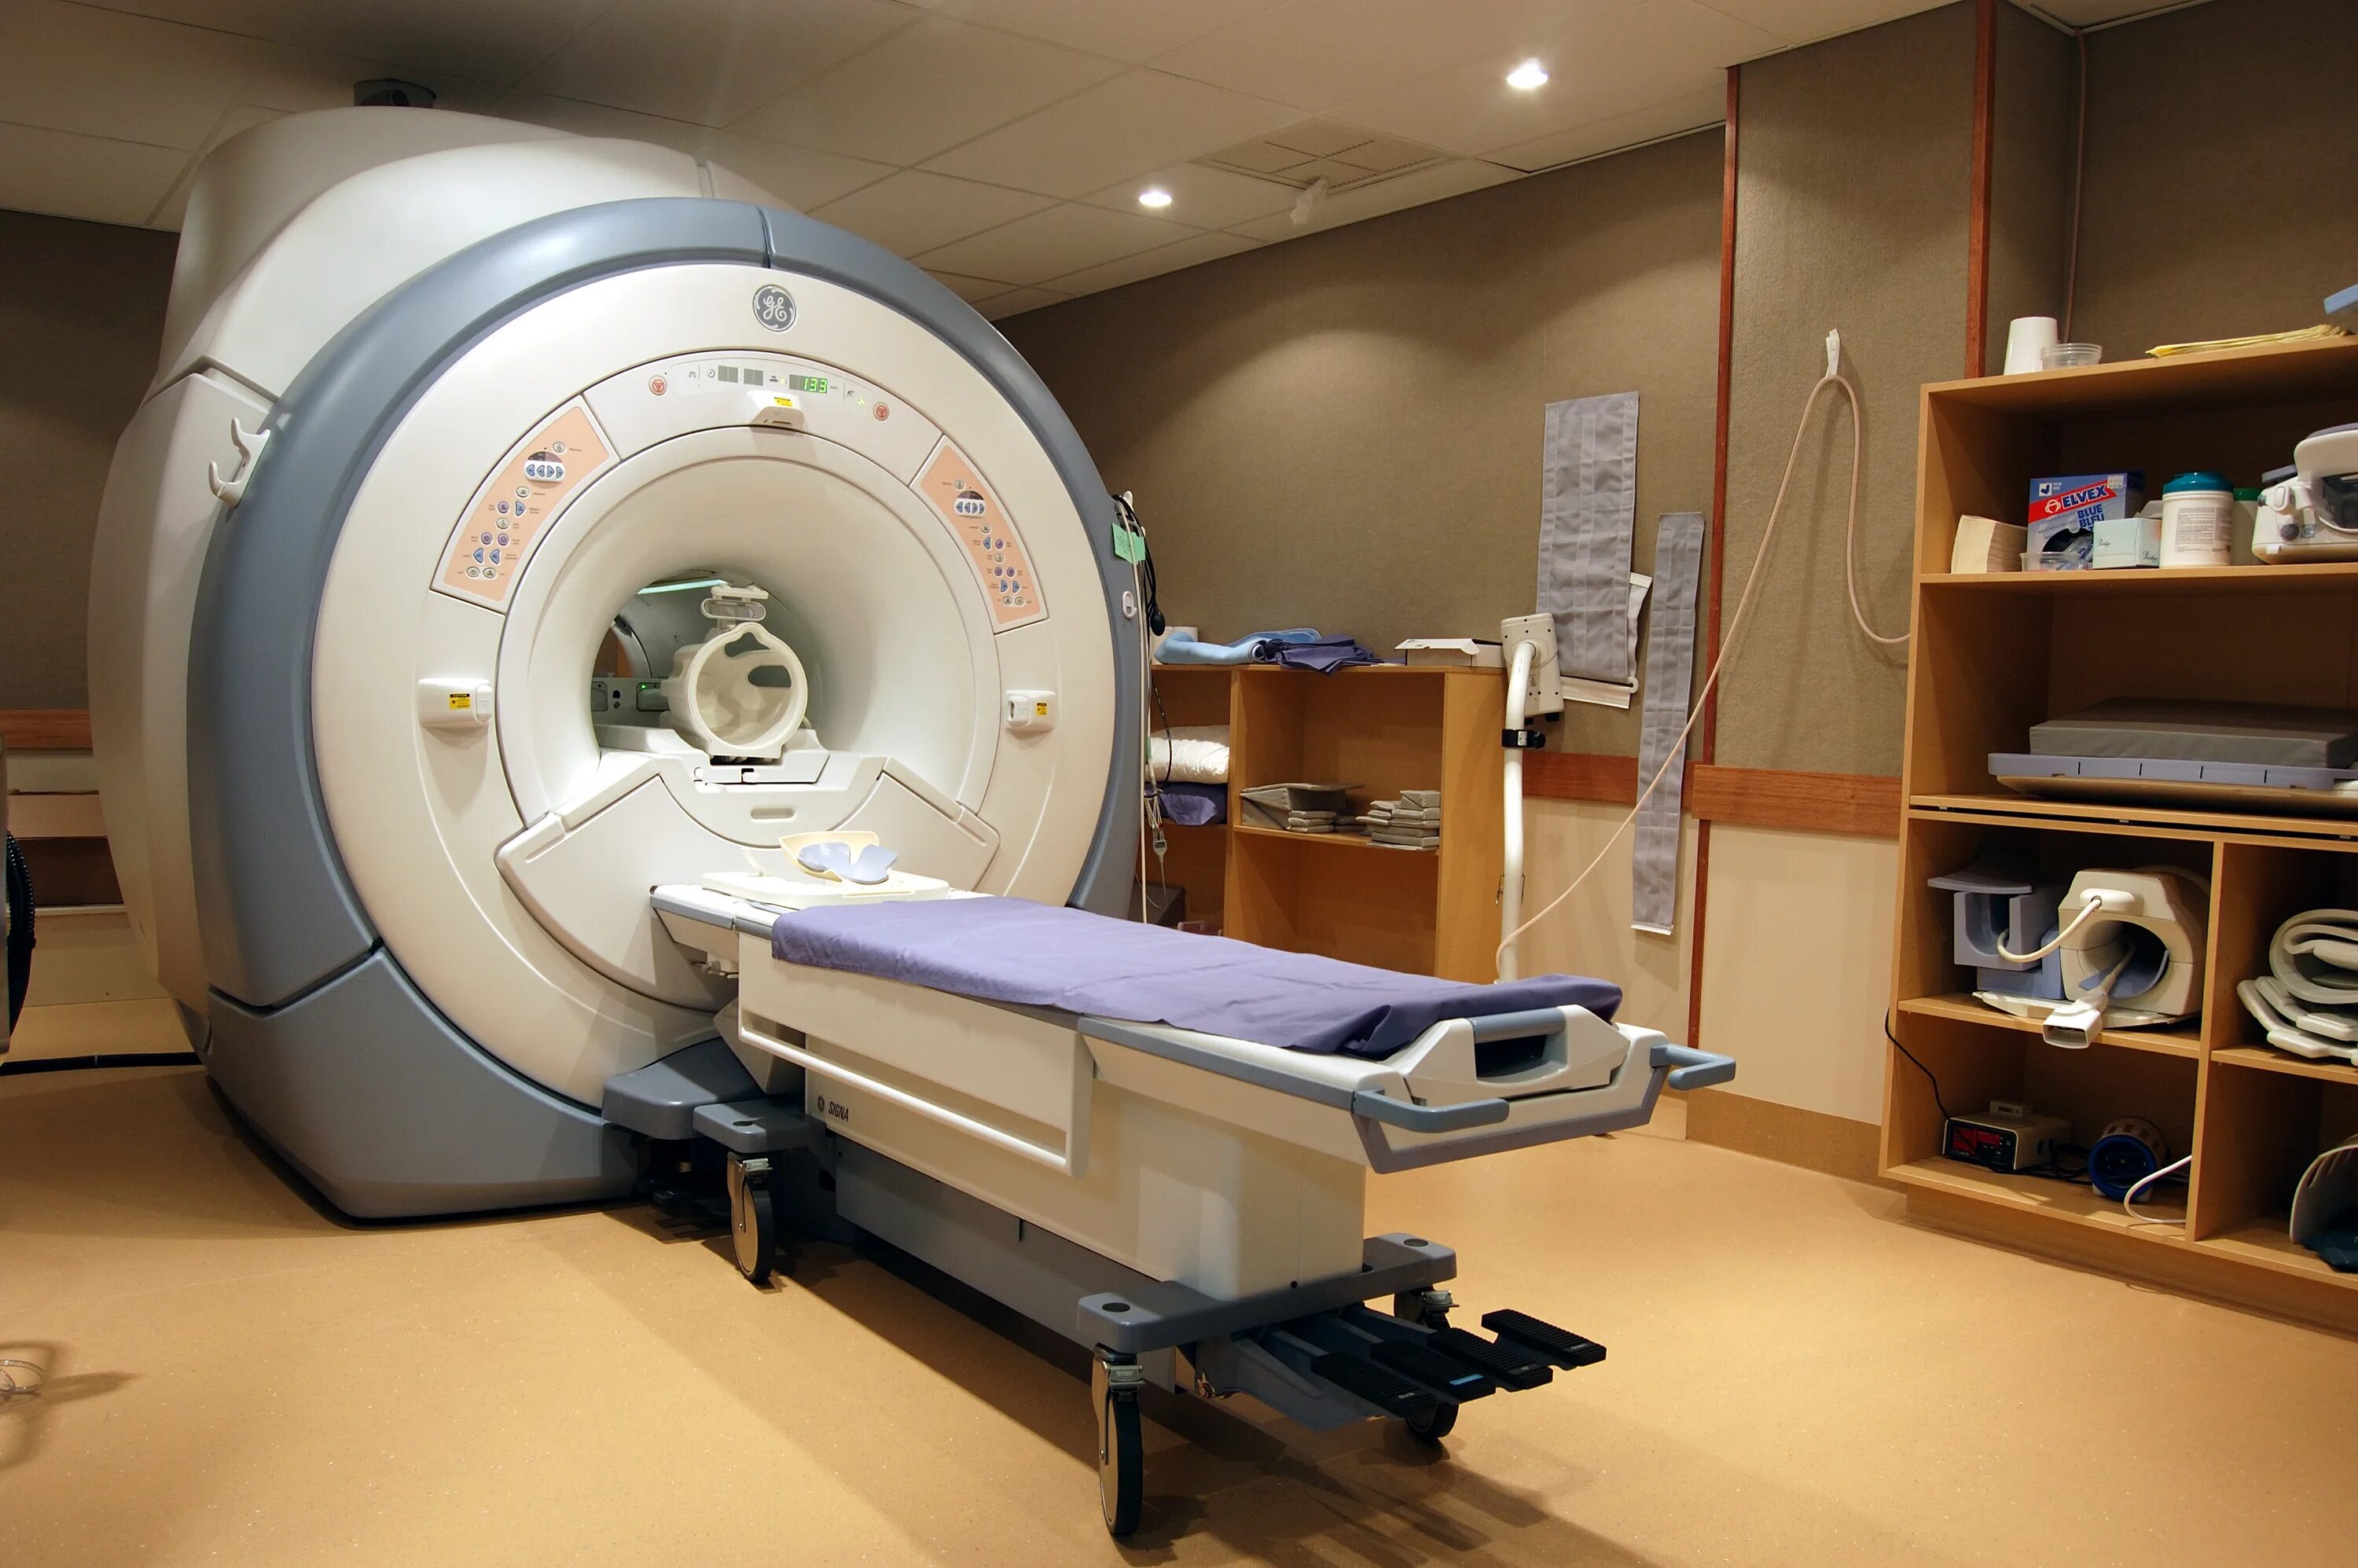 Mrt. Magnetic Resonance Imaging (MRI). Emar t6060lq. Современный томограф. Кабинет магнитно-резонансной томографии.